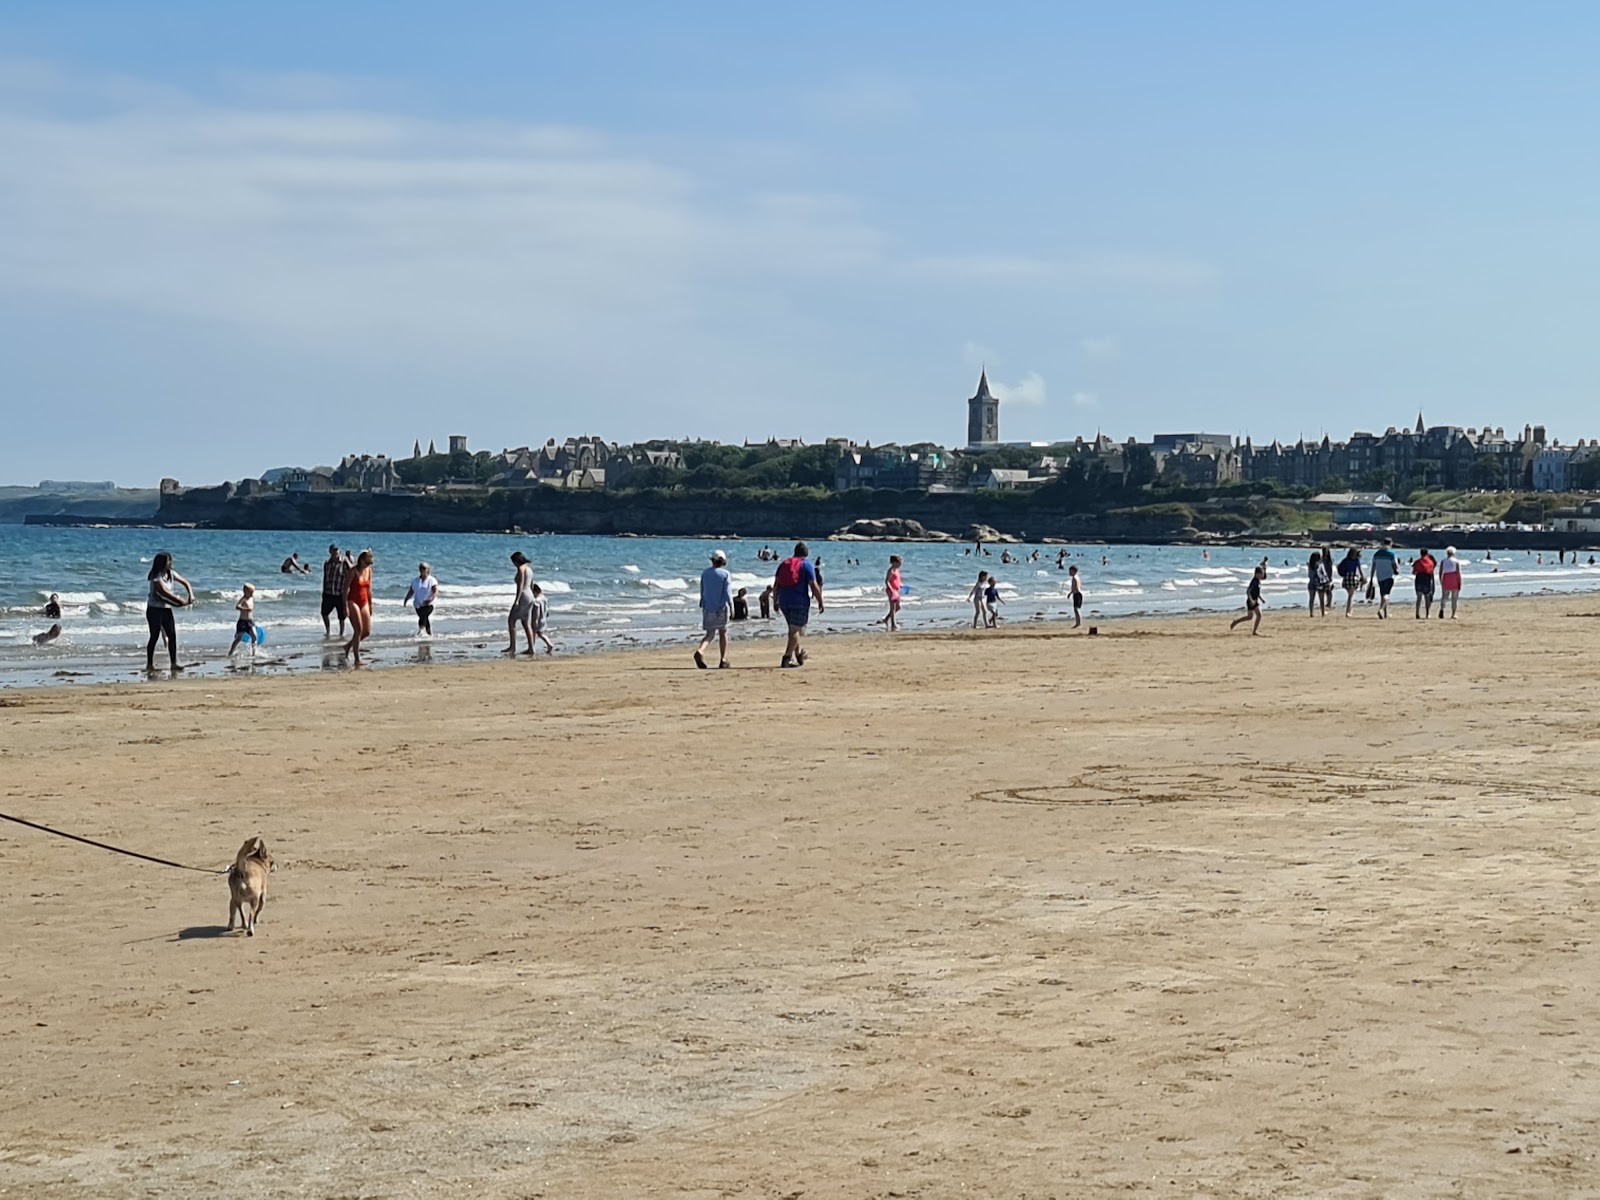 Zdjęcie West Sands Beach - popularne miejsce wśród znawców relaksu